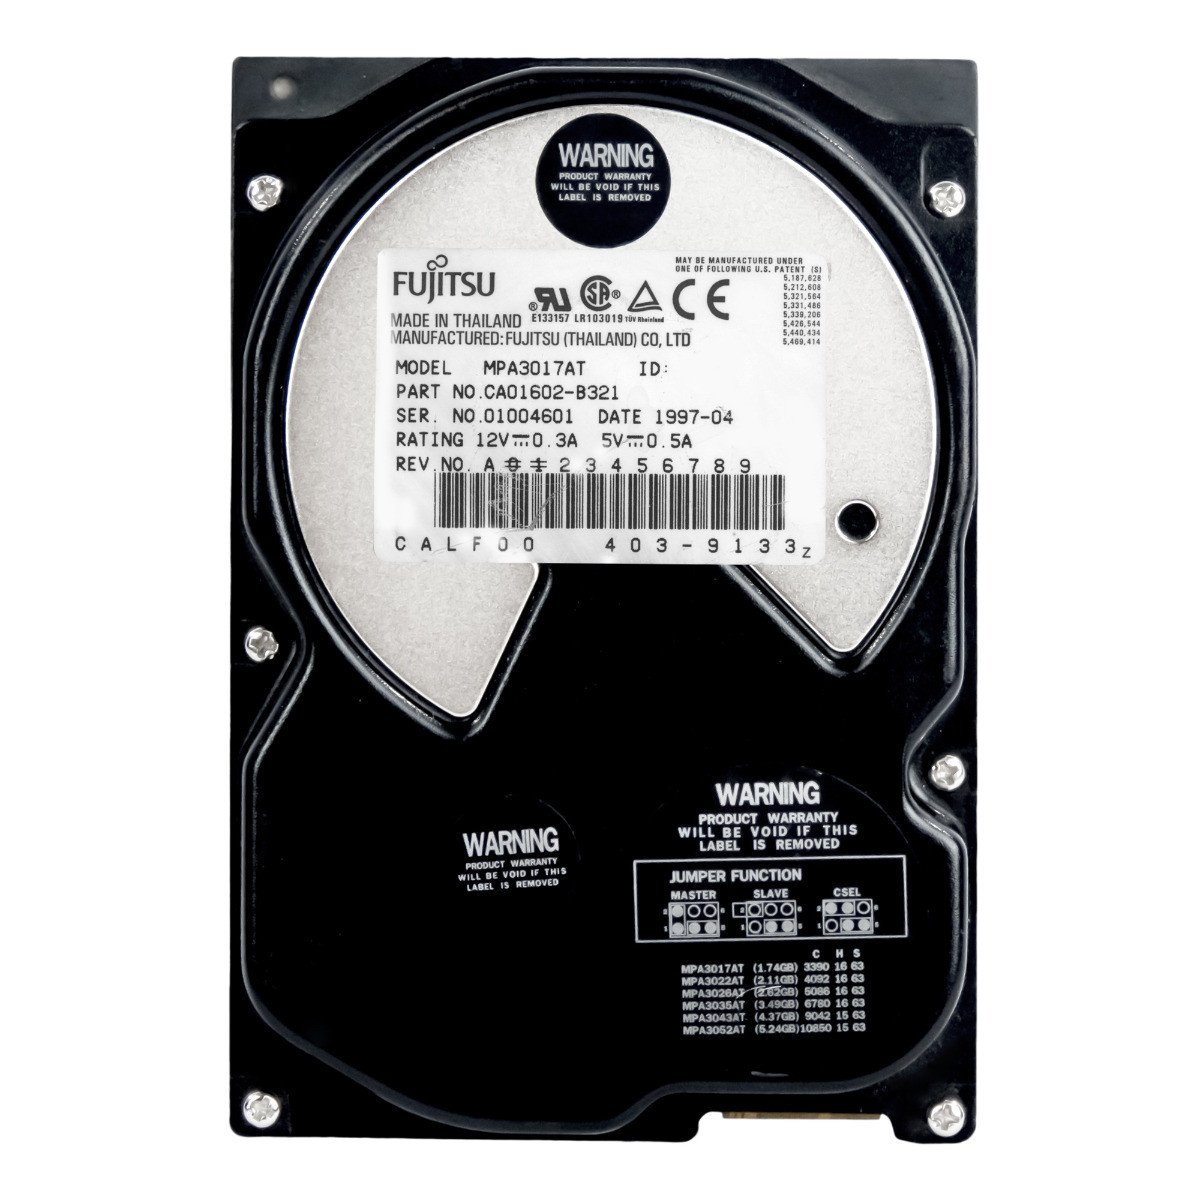 Fujitsu 1.7GB Ata 5.4K 3.5'' MPA3017AT